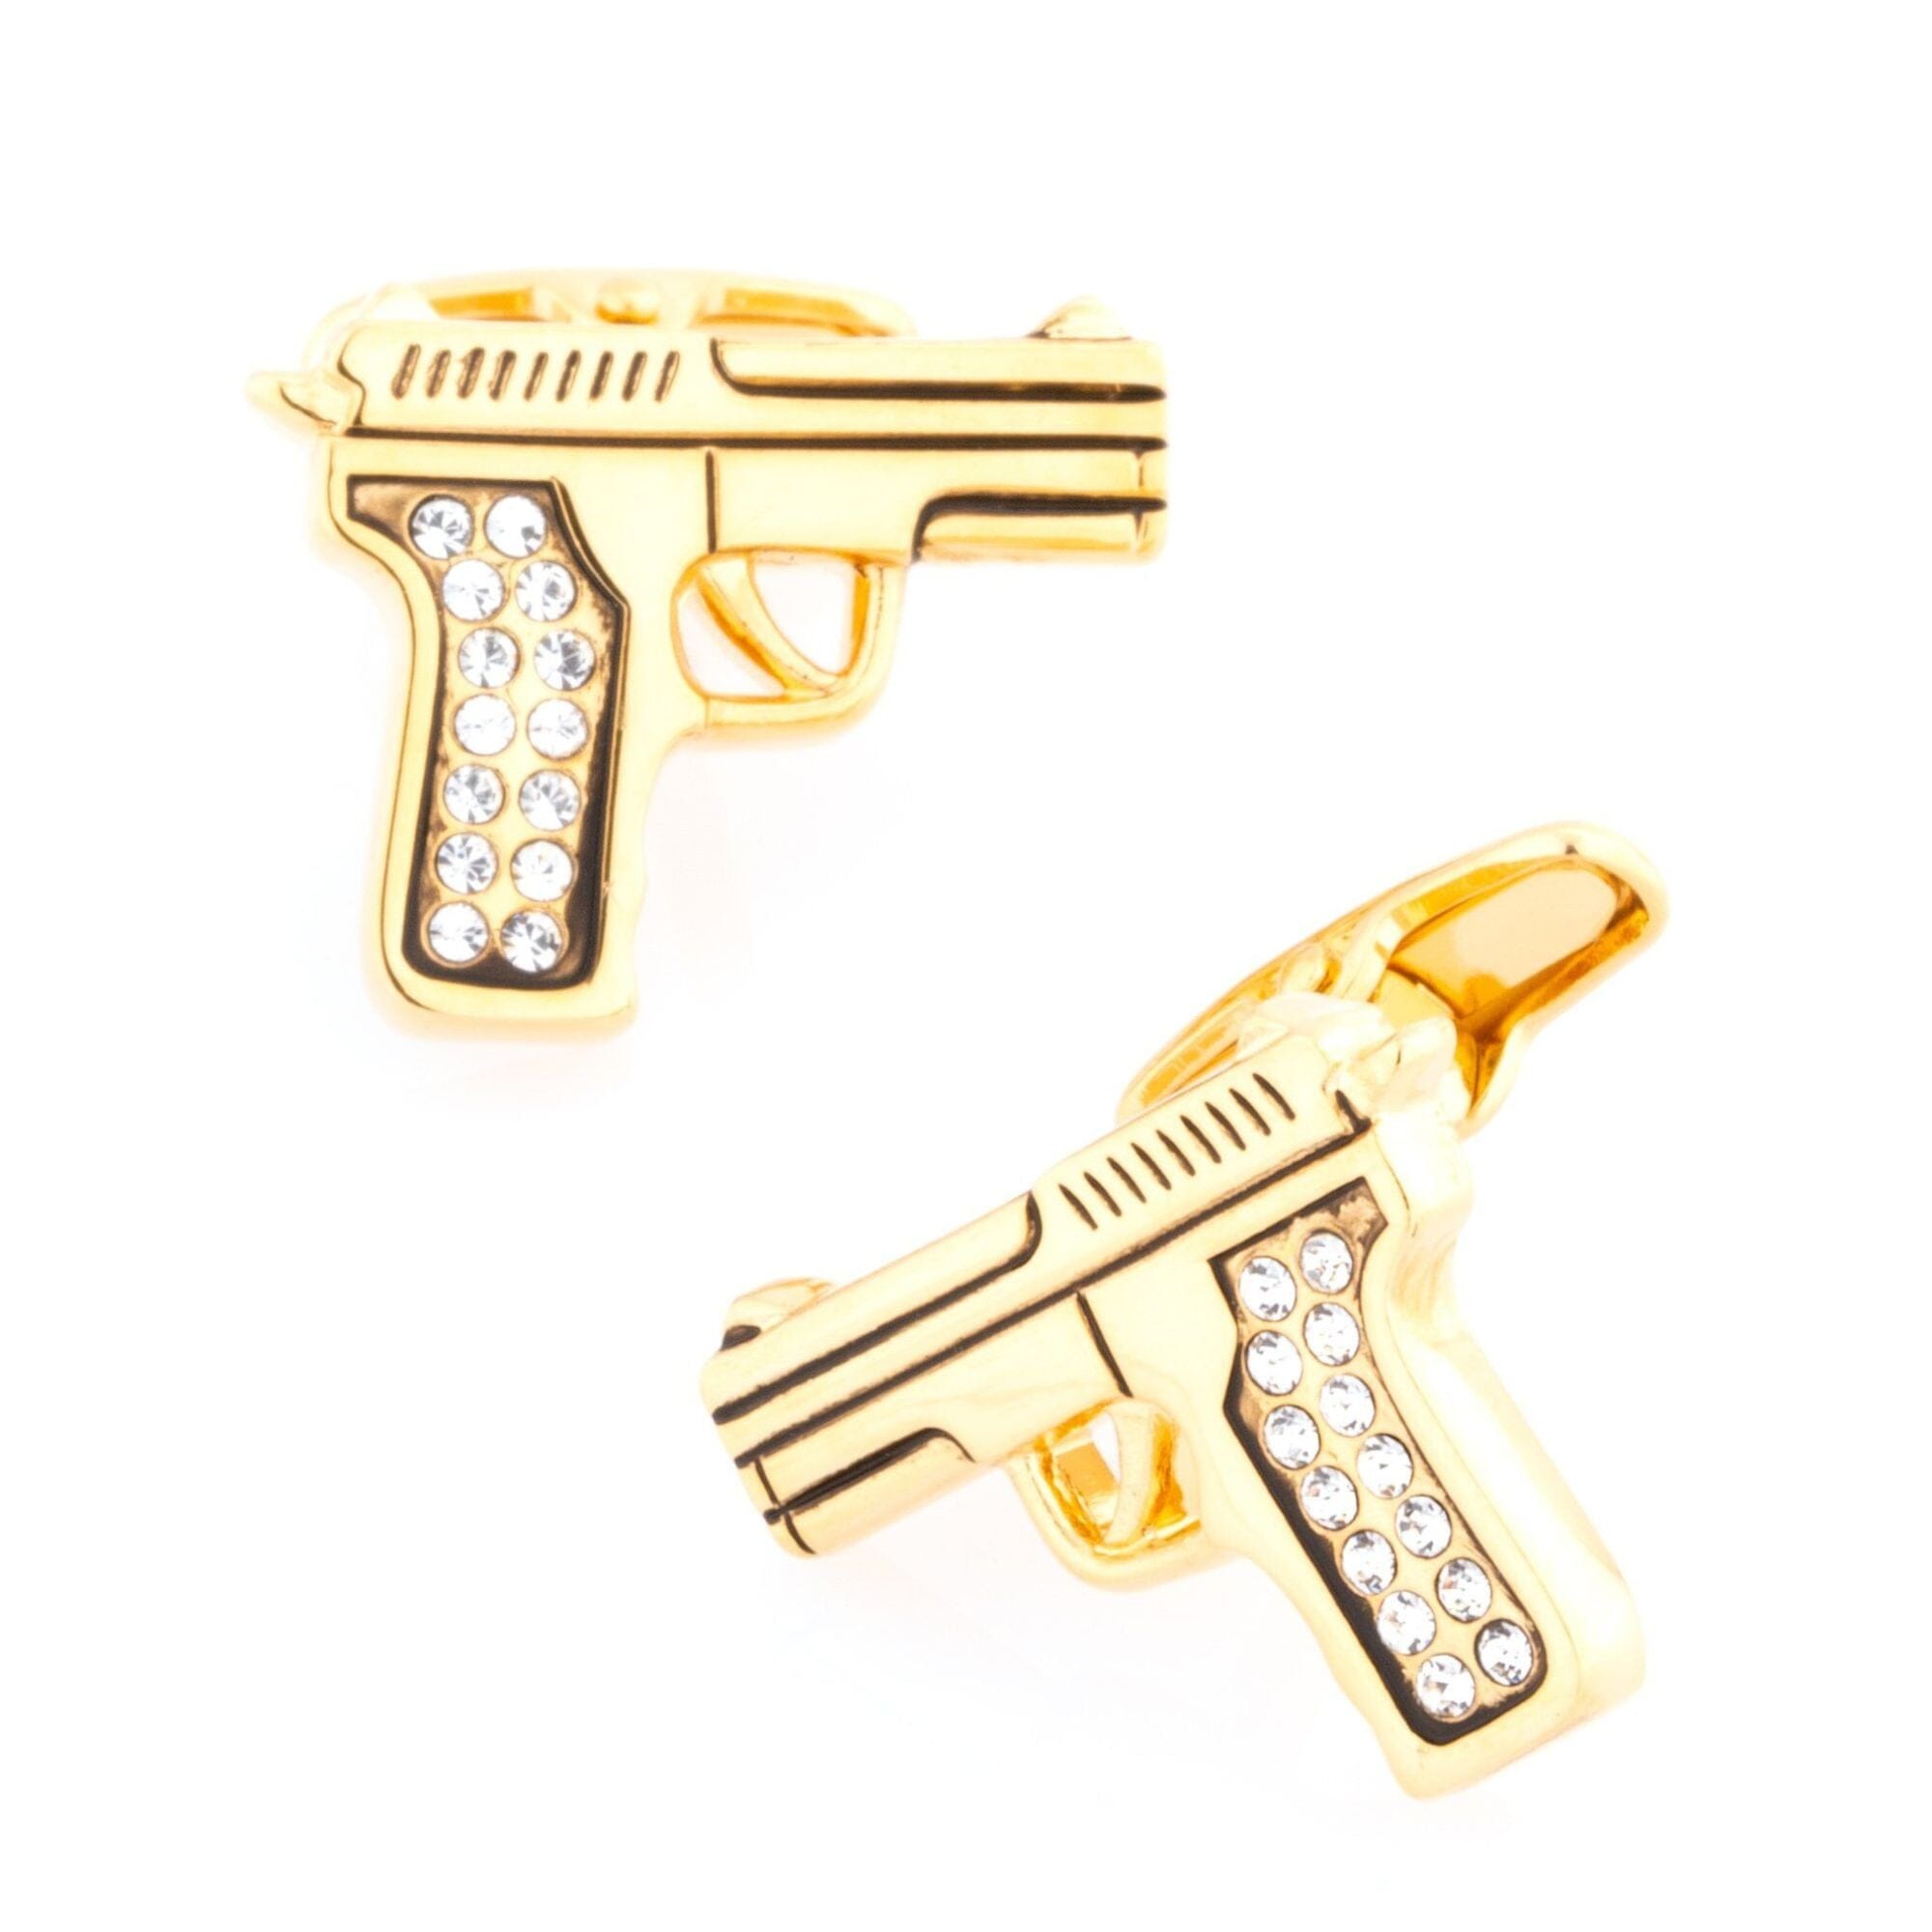 Gold Crystal 9mm Hand Gun Cufflinks Novelty Cufflinks Clinks Australia Gold Crystal 9mm Hand Gun Cufflinks 